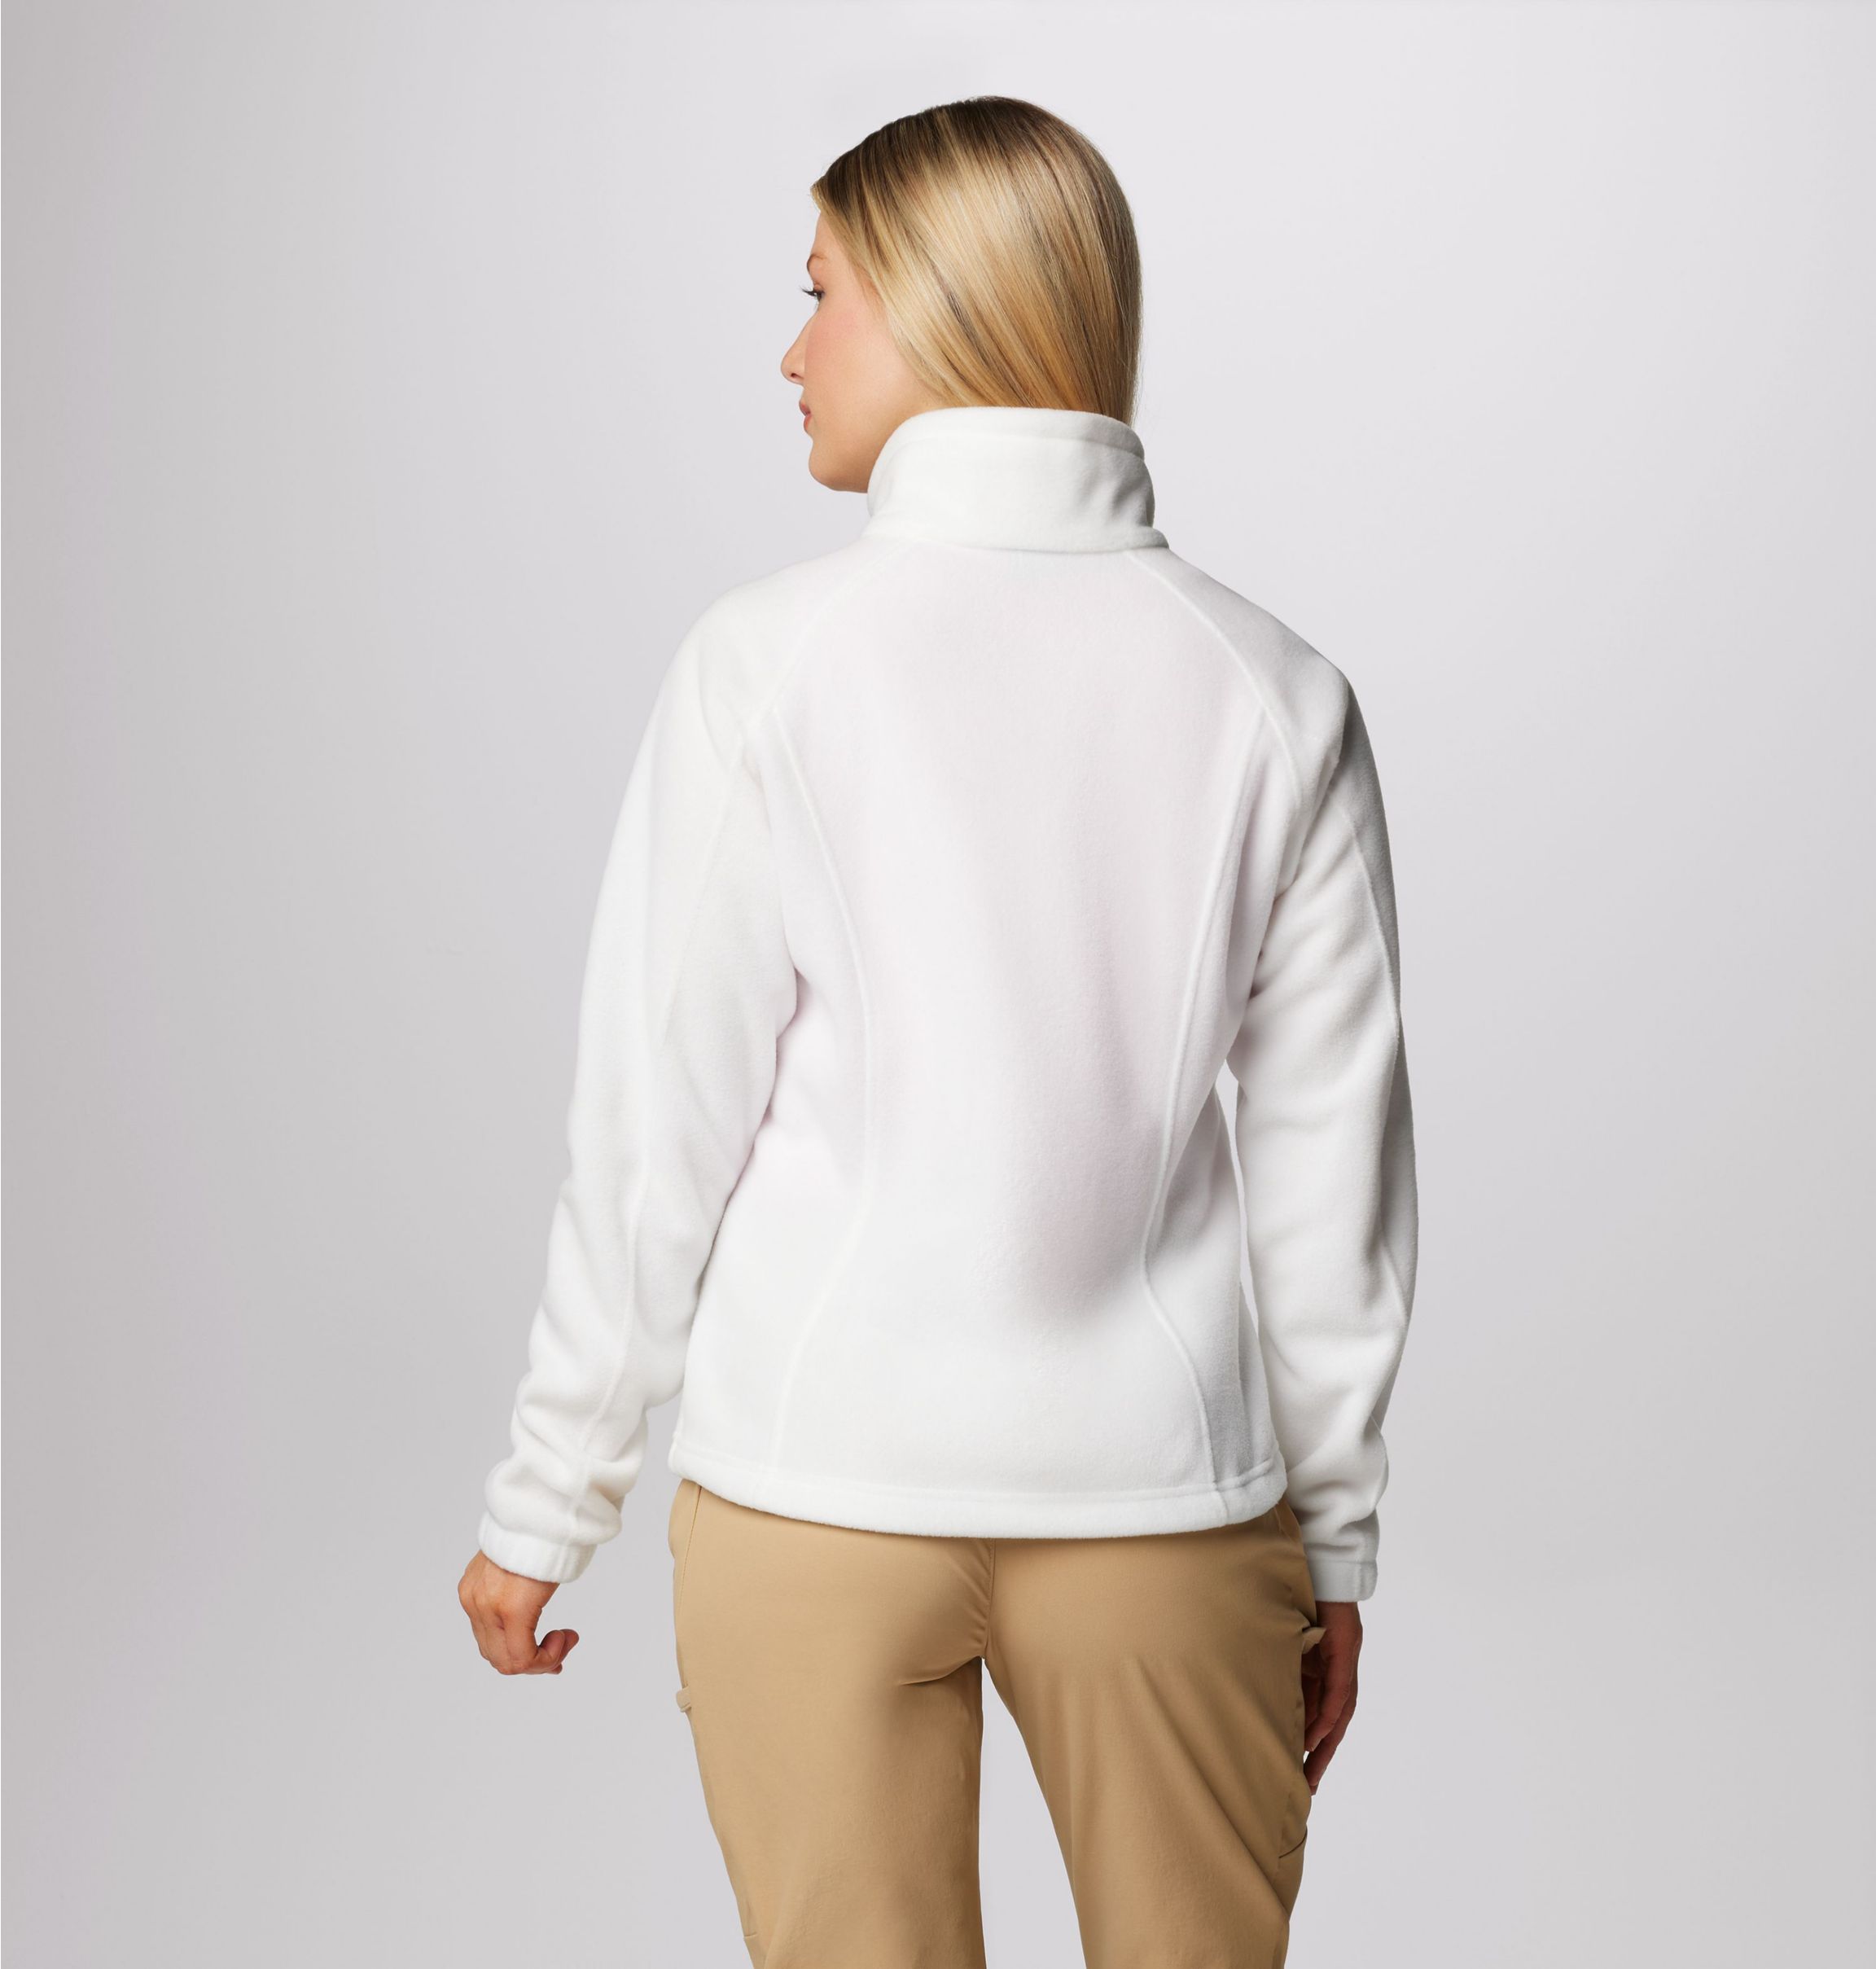 Women's Benton Springs™ Full Zip Fleece Jacket